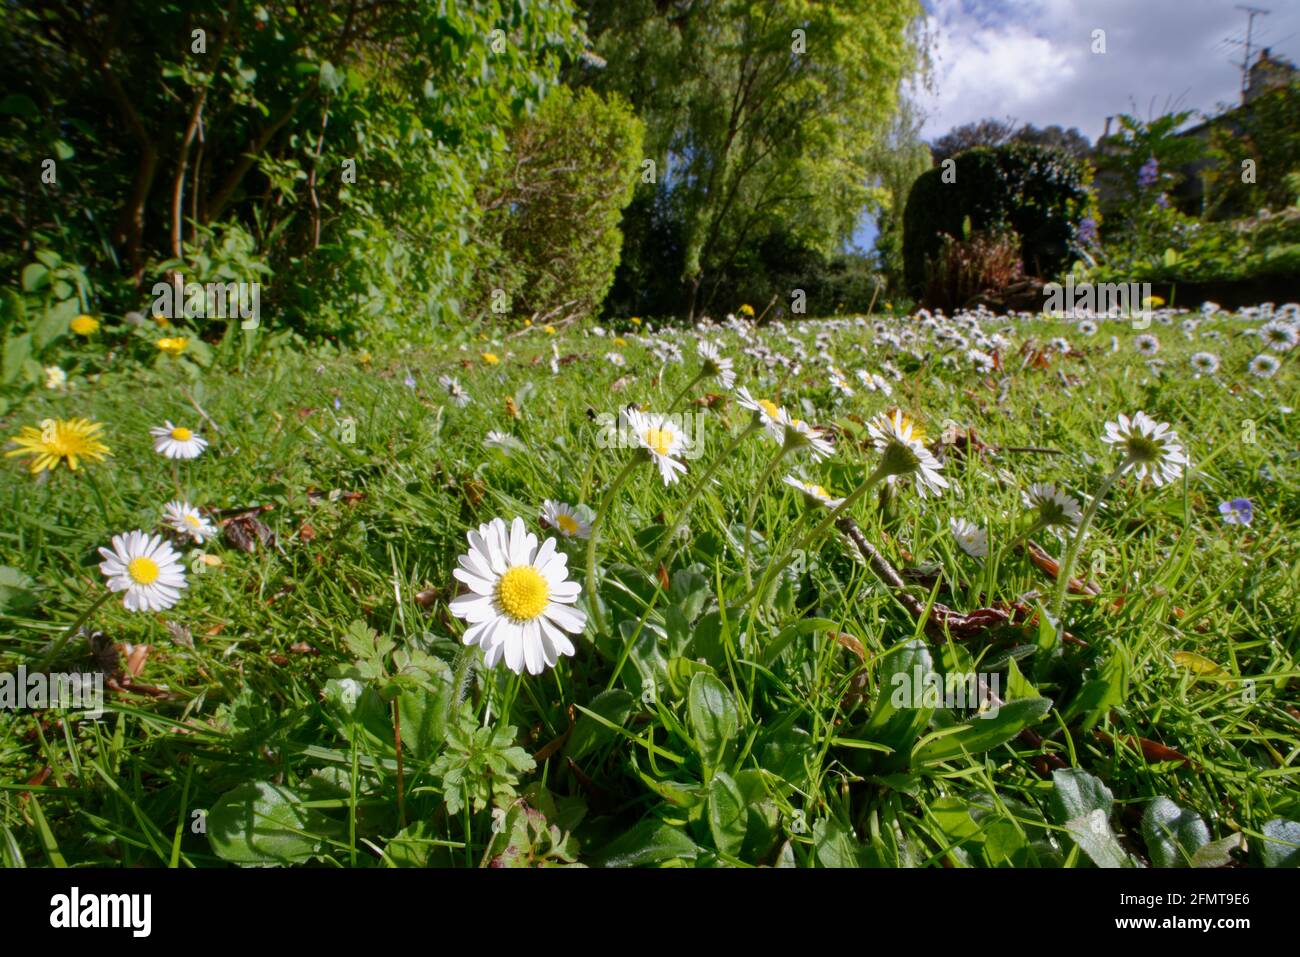 Pâquerettes et pissenlits fleurissent dans une pelouse laissée immown pour permettre aux fleurs sauvages de s'épanouir et aux insectes de se nourrir, Wiltshire Garden, Royaume-Uni, mai. Banque D'Images